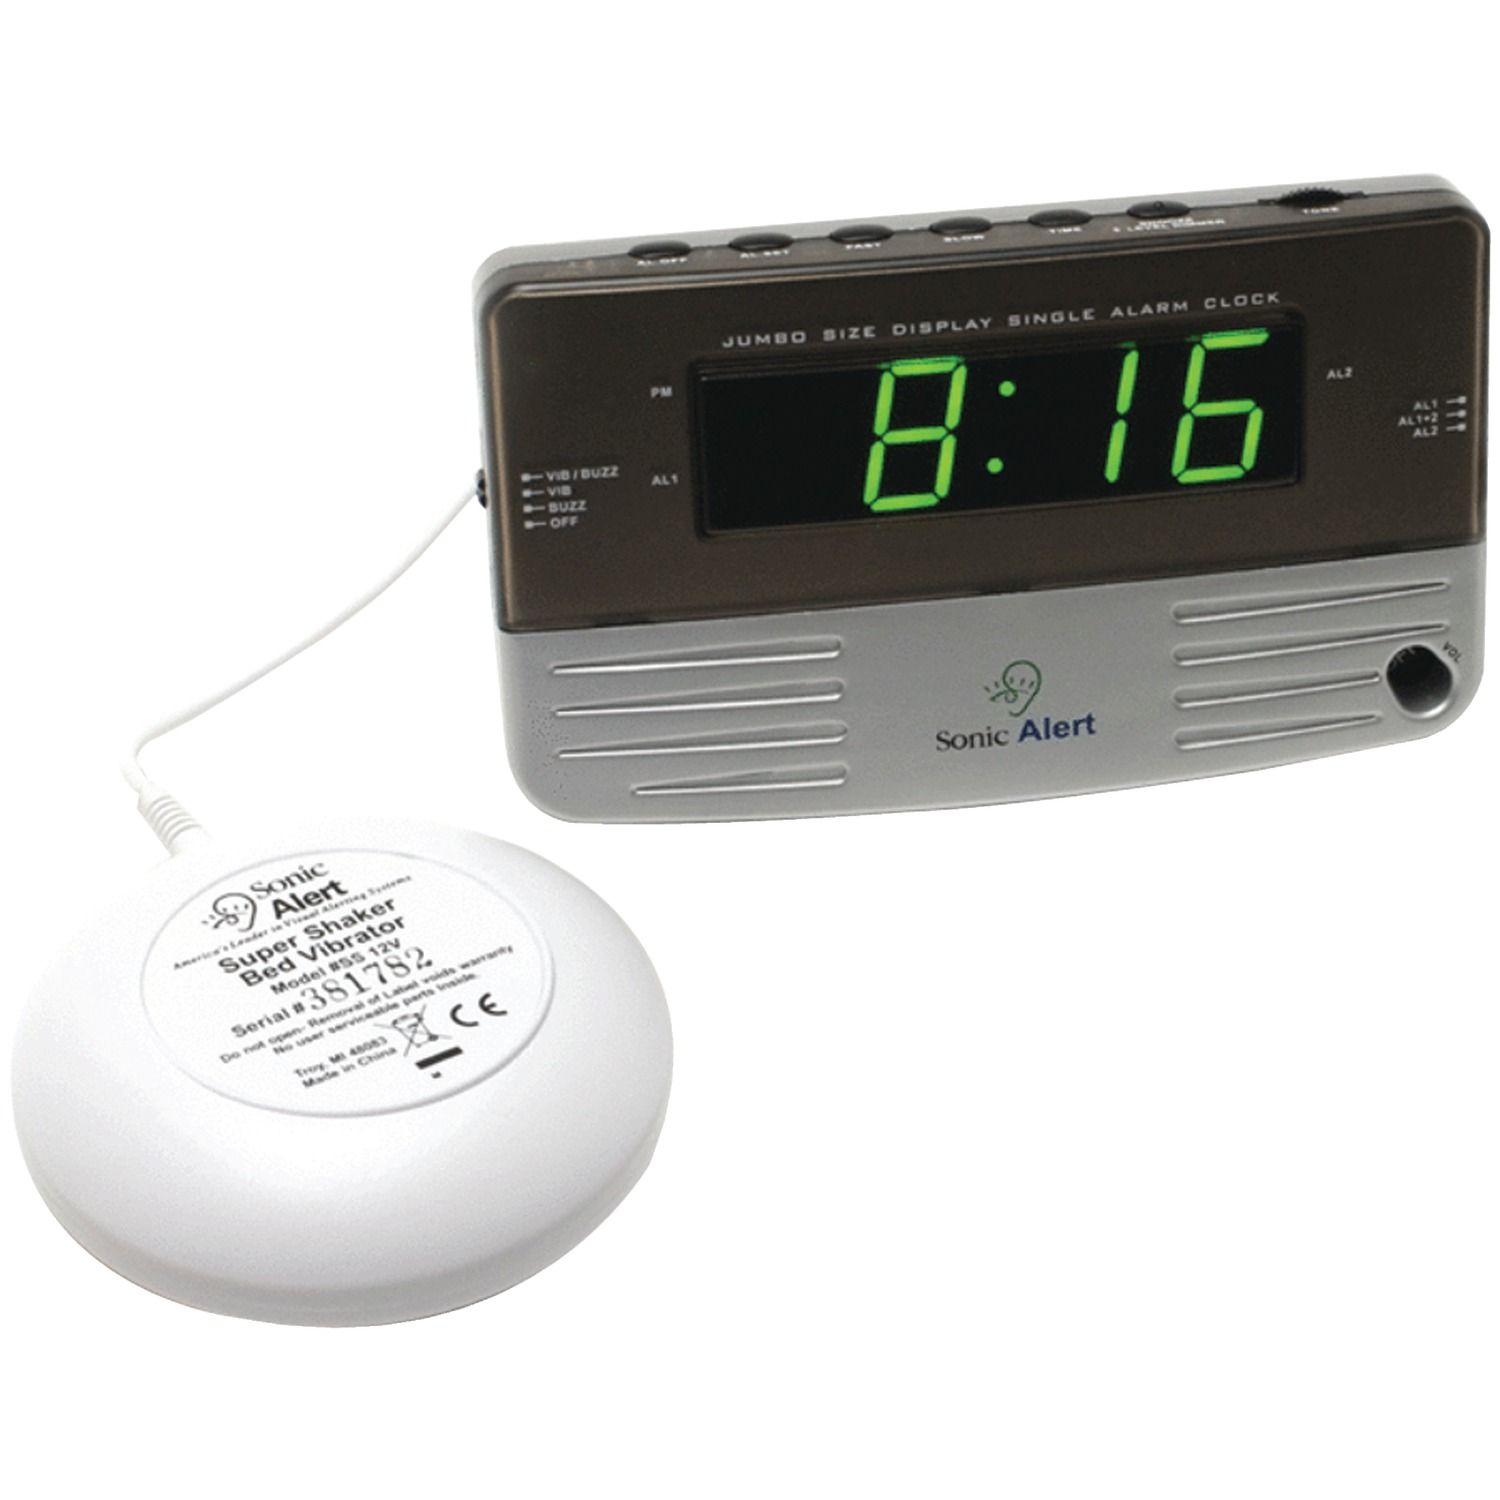 SWAT reccomend Best dual bed vibrator alarm clock